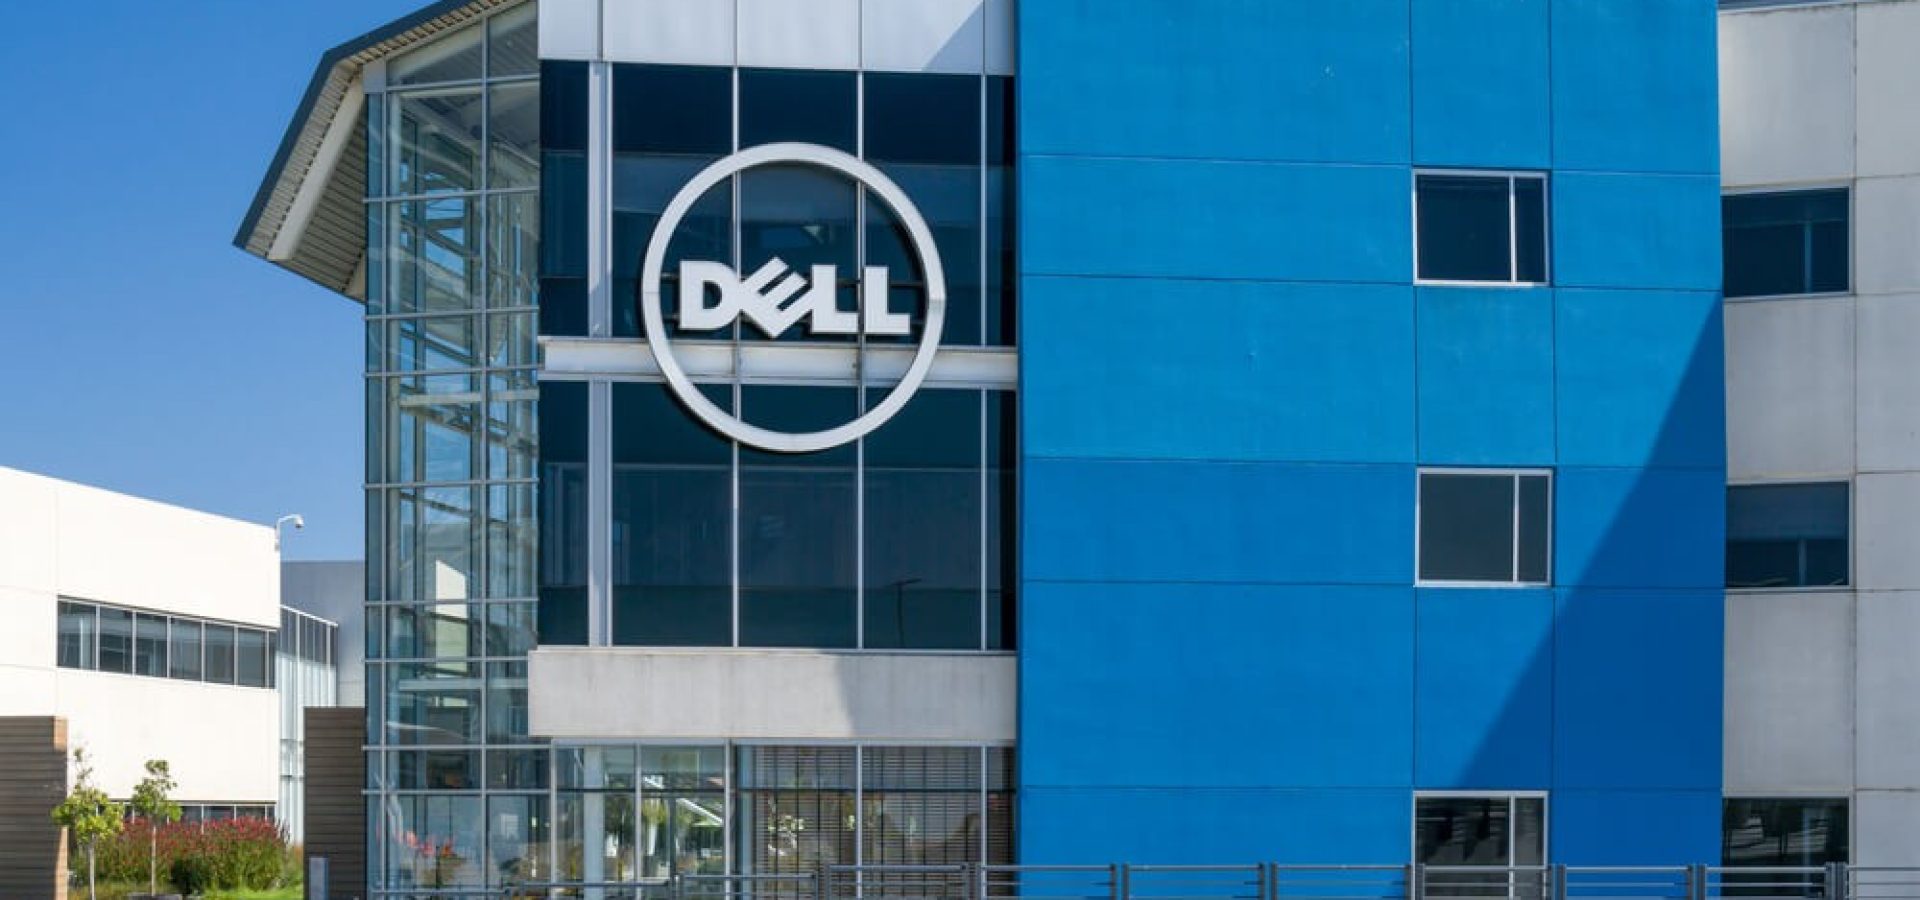 Dell: Dell computer corporate facility and logo.